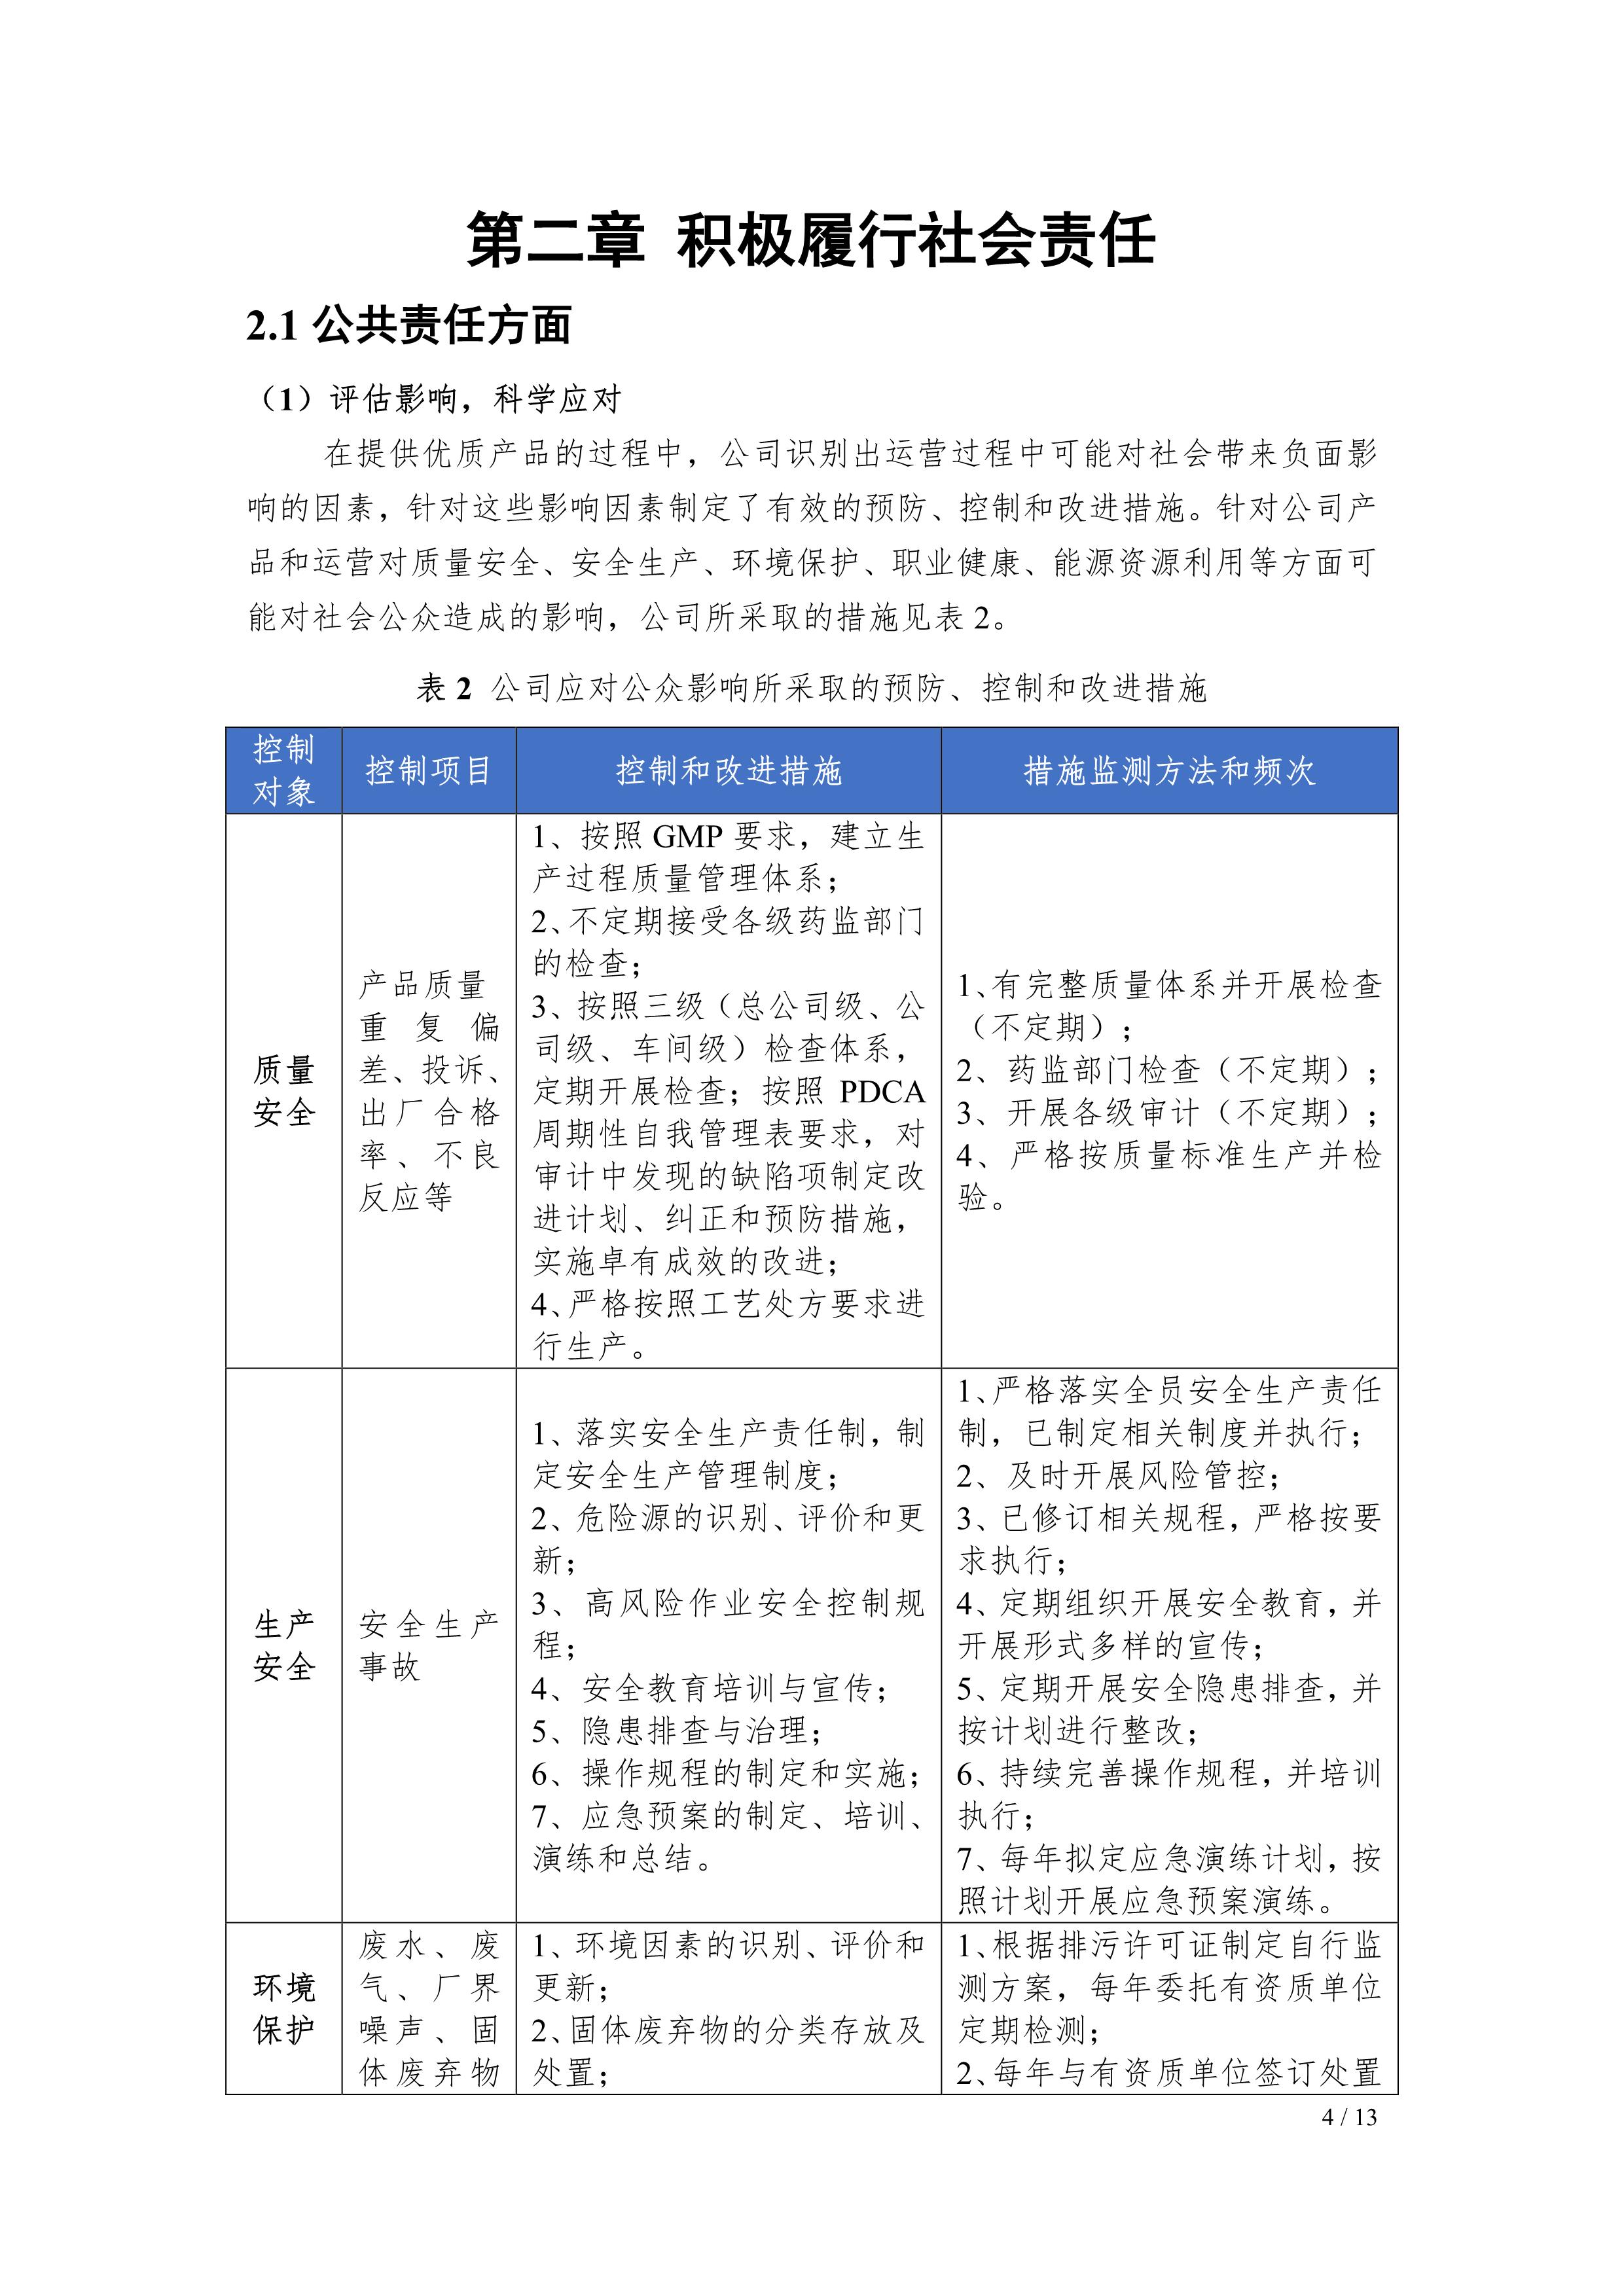 江蘇制藥股份有限公司2021年社會責任報告公示